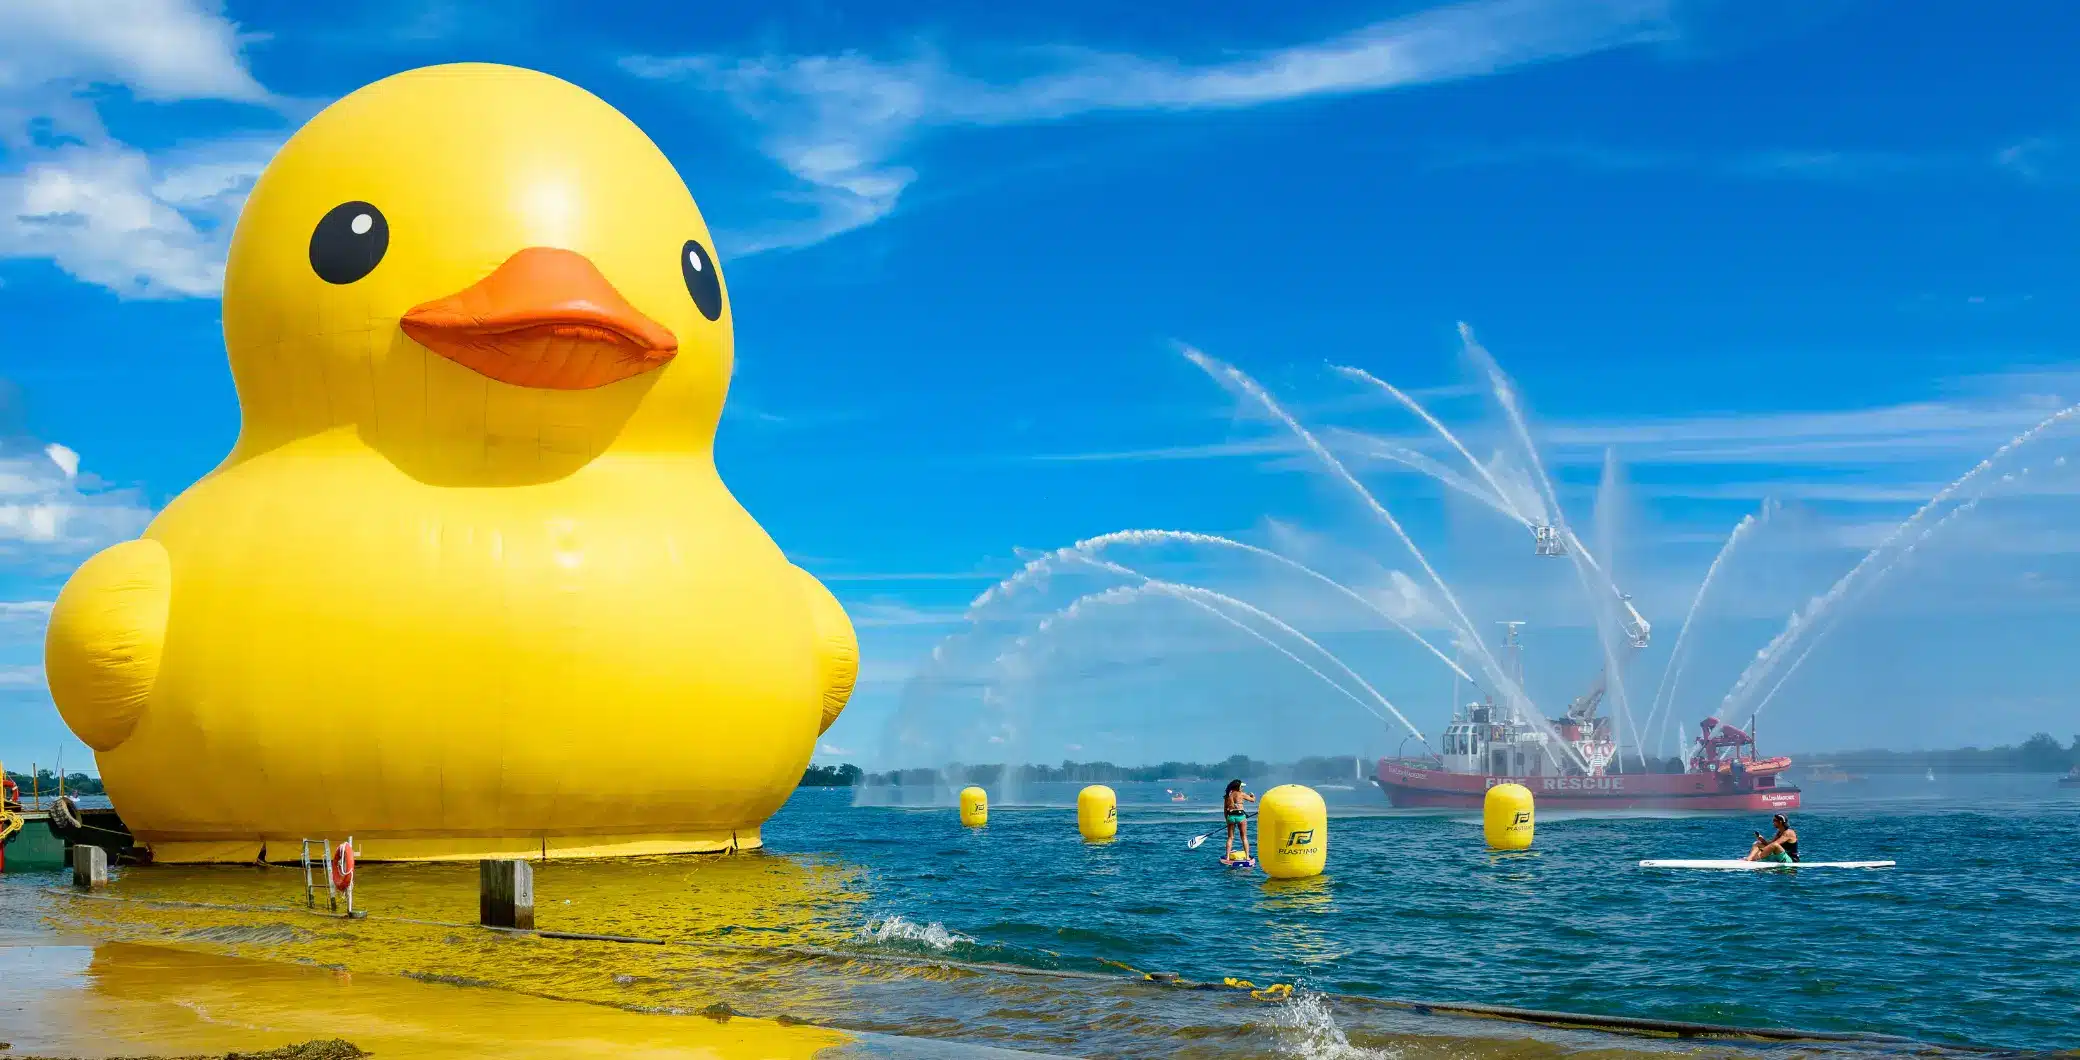 全球最大的橡皮鸭子将在此周末回到多伦多的海滨节。